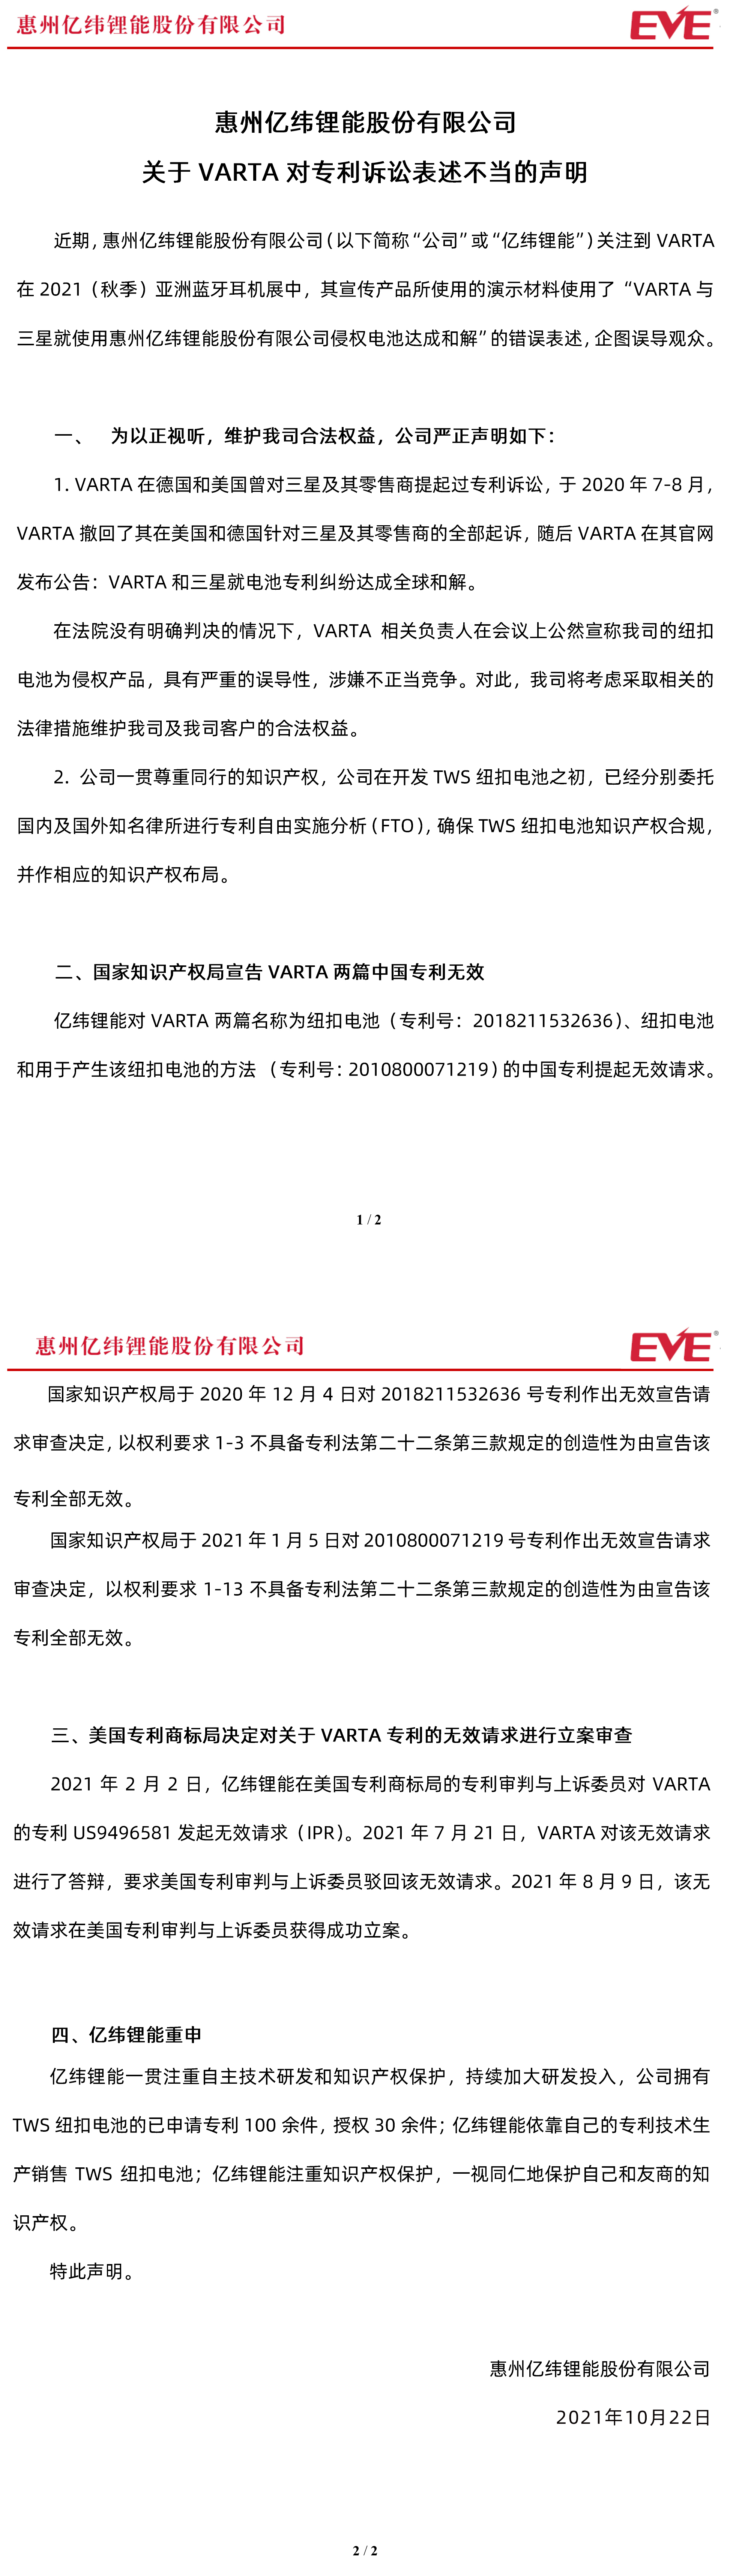 惠州億緯鋰能股份有限公司關于VARTA對專利訴訟表述不當的聲明